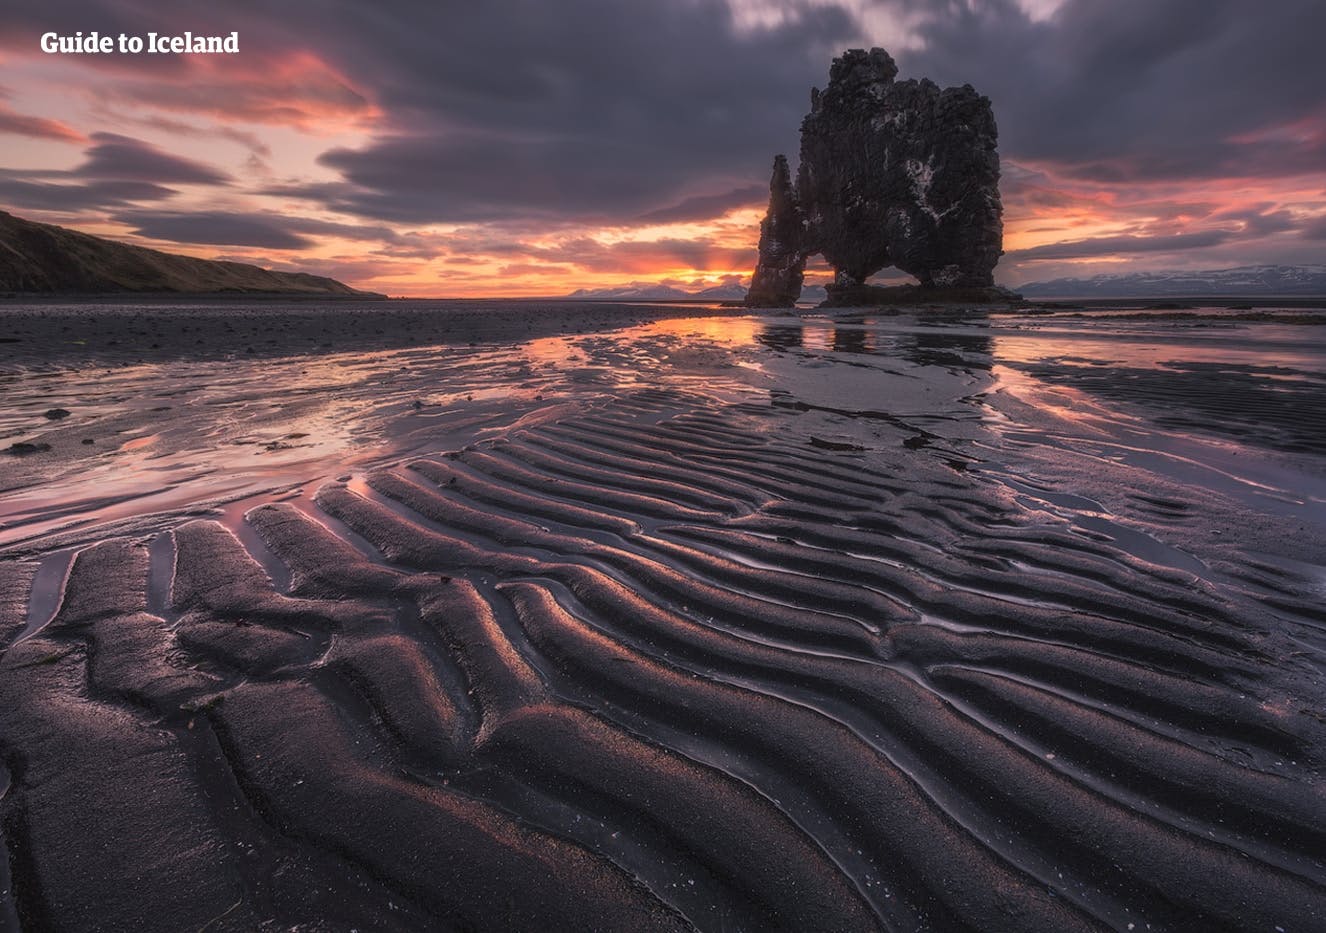 La formación rocosa Hvitserkur frente a la costa de la península Troll de Islandia.